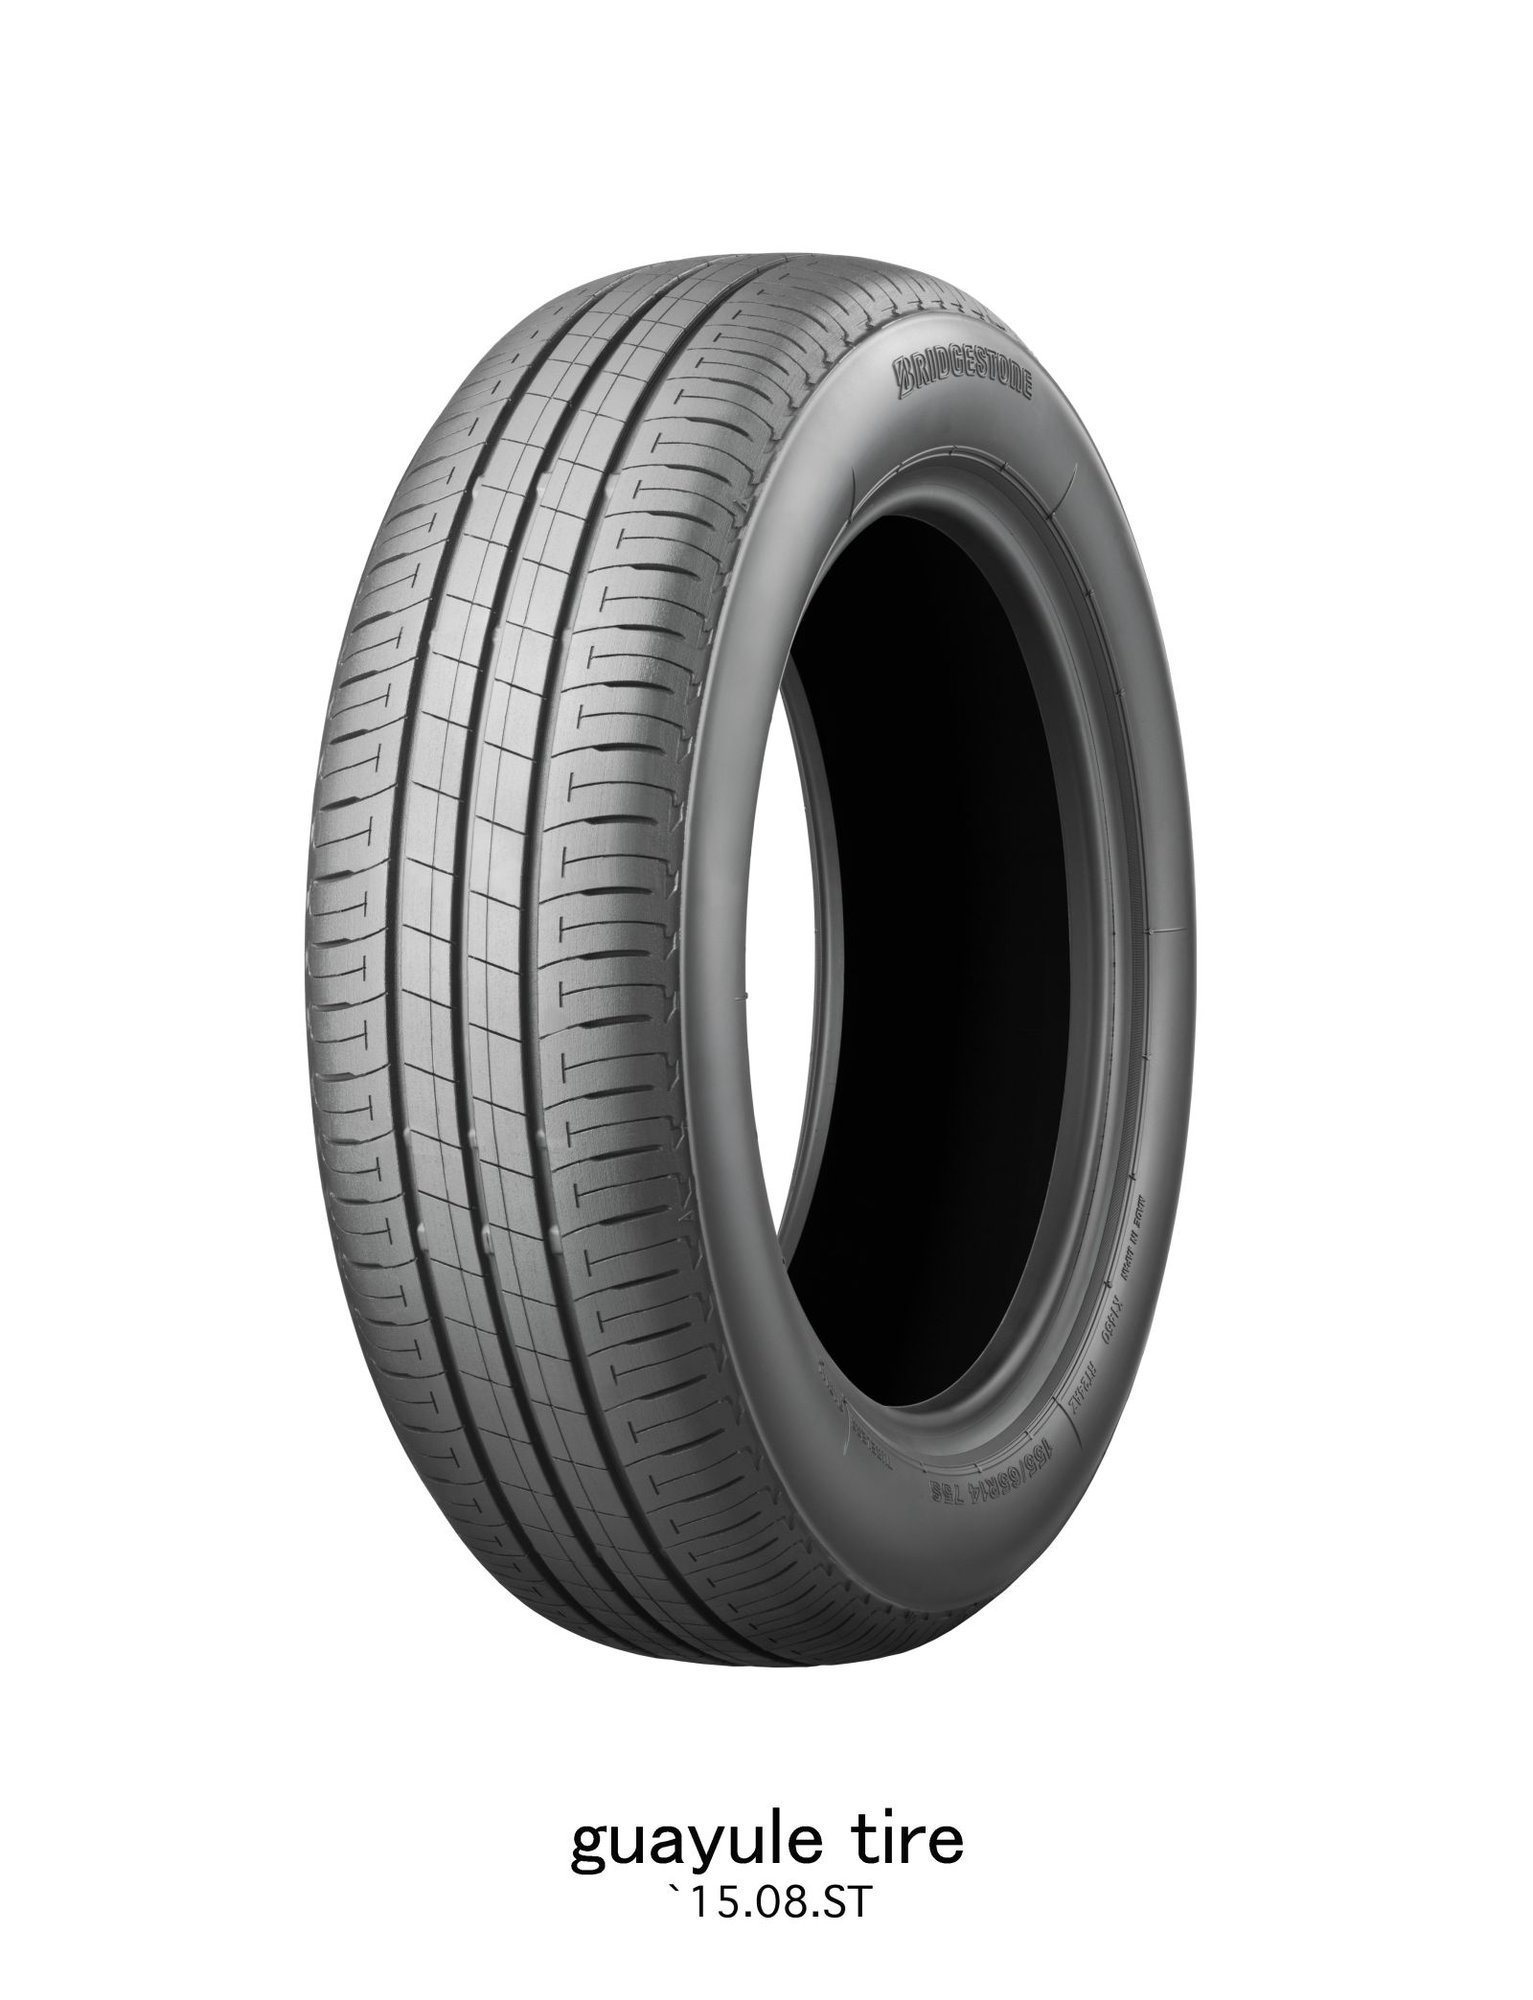 Bridgestone a jejich nové pneumatiky